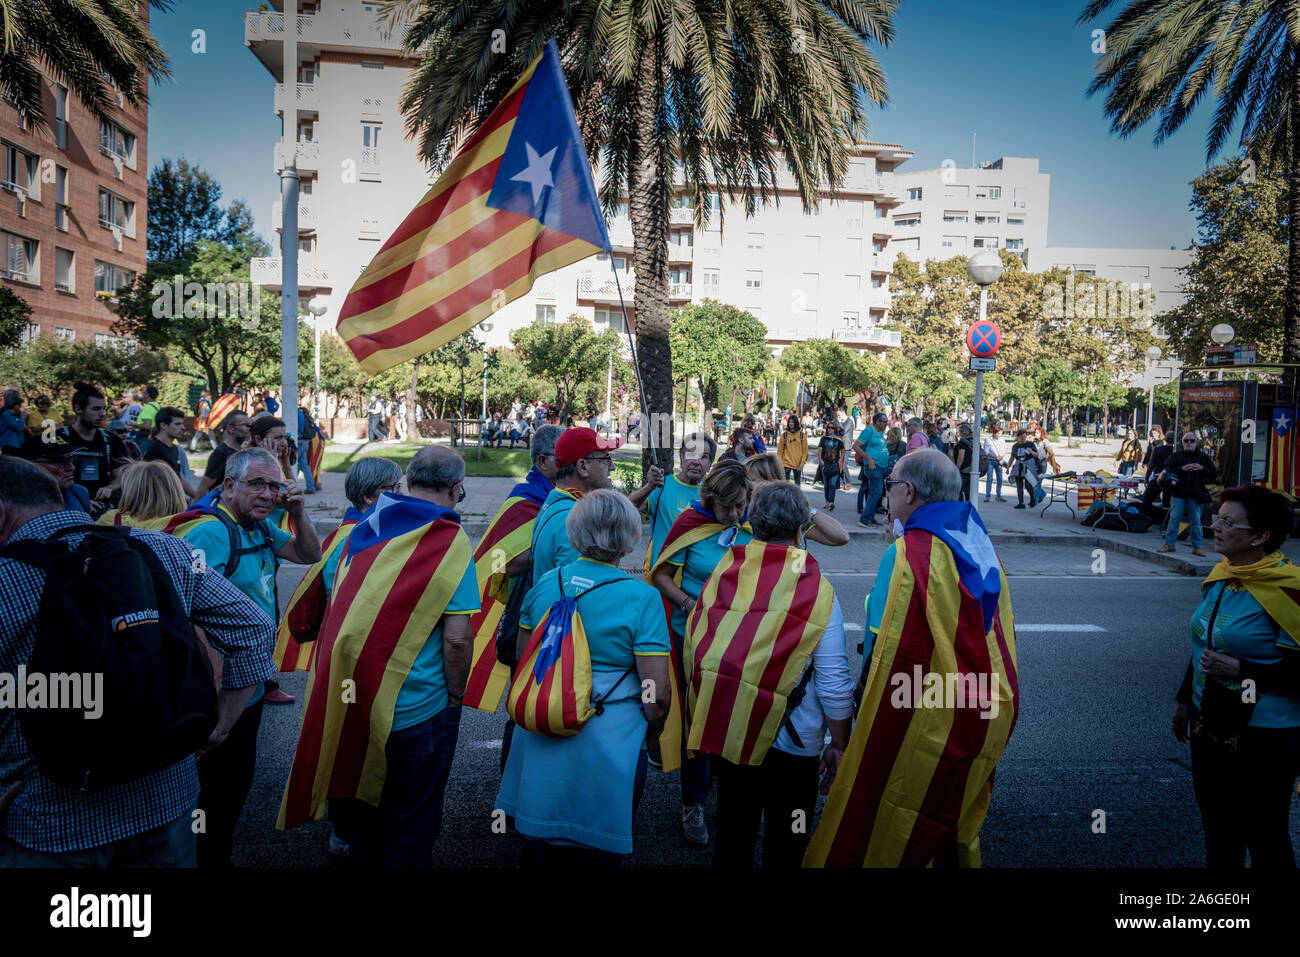 Barcelona Cataluña el dia 26 de octubre 2019 la asociaciones separatista se manifiesta en Barcelona con el lema libertad presos políticos BCN 2019 Foto de stock